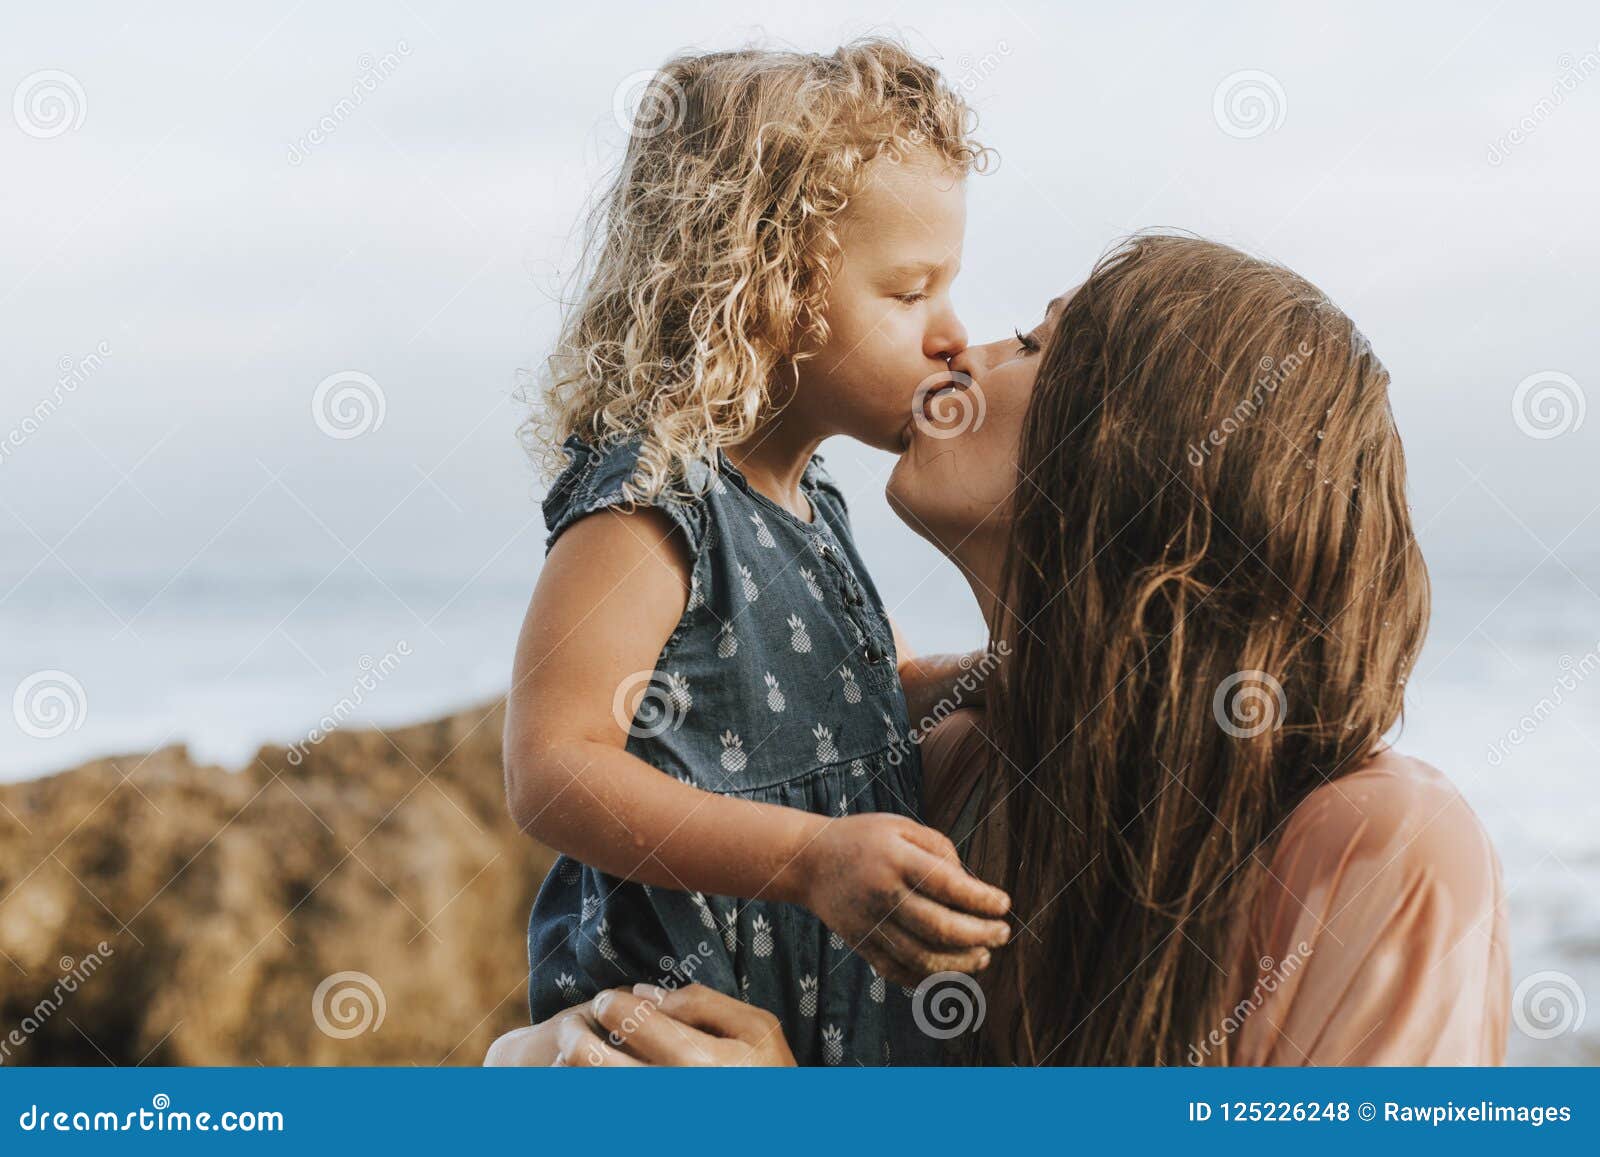 Мама и дочка целуются. Мама целует дочь. Дочь целует маму на пляже. Мама с дочкой поцелуй. Мама с дочкой поцелуй пляж.